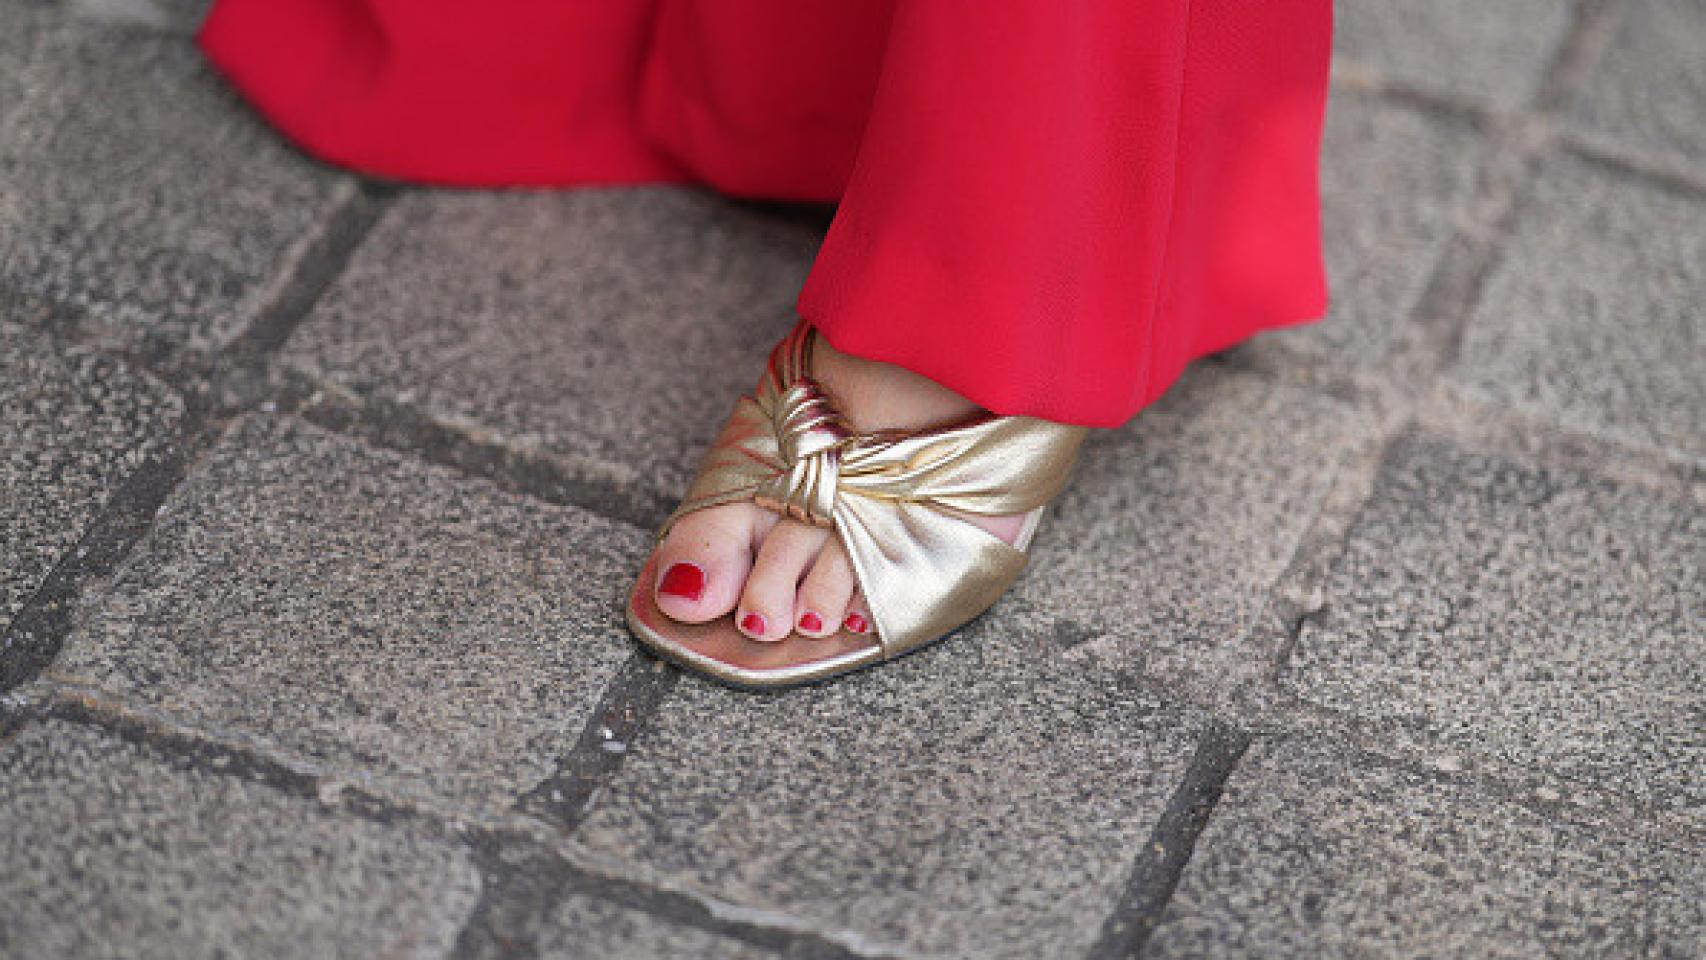 Detalle de sandalias doradas en el 'street style'.